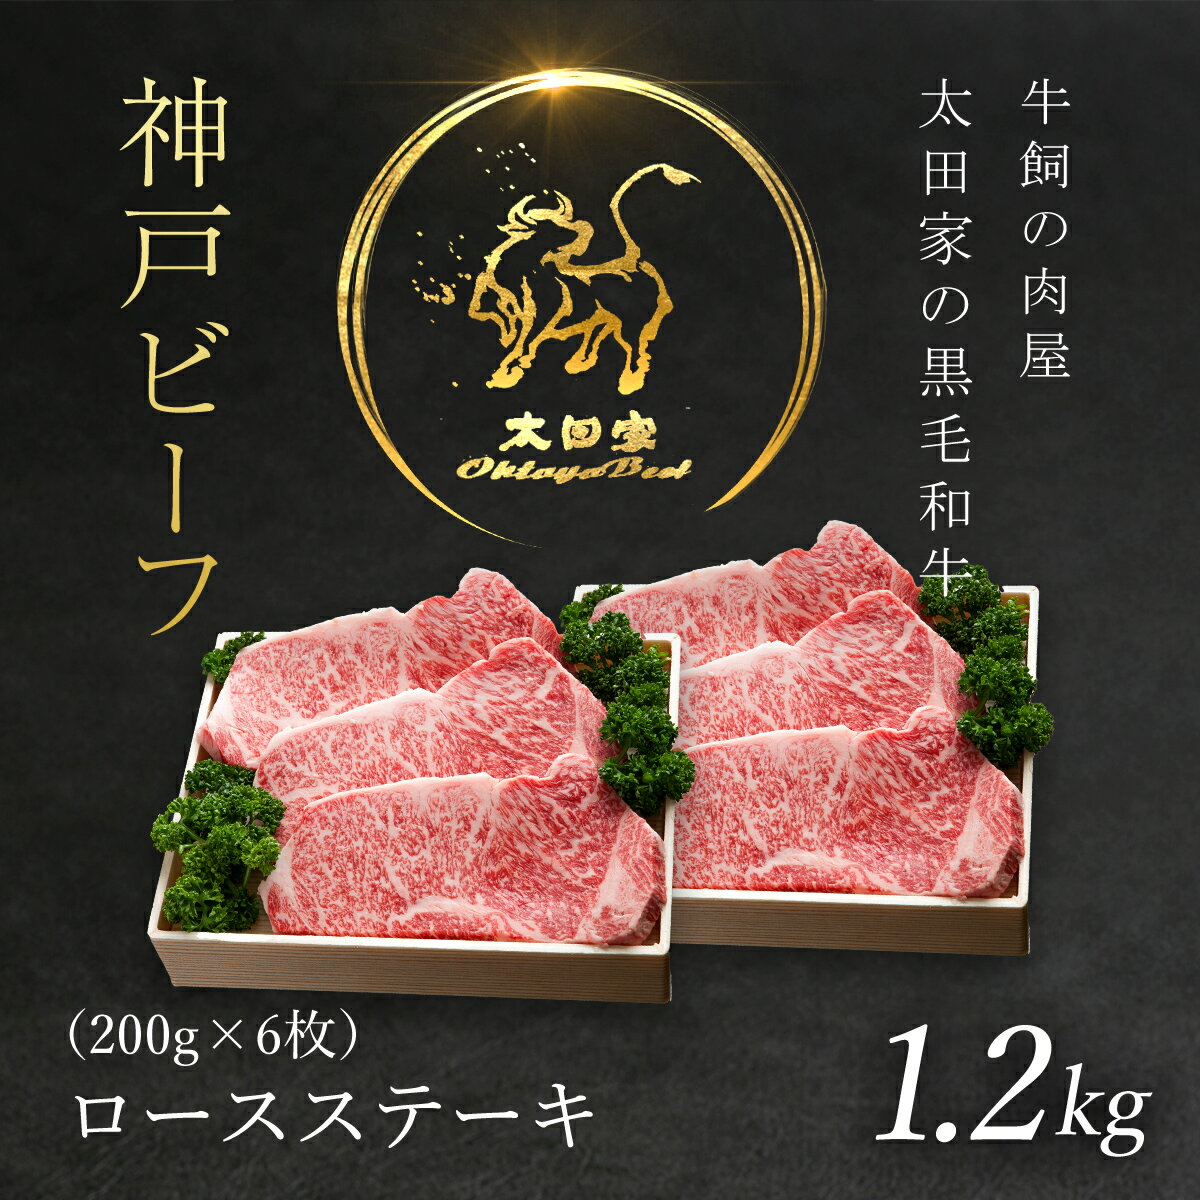 【ふるさと納税】神戸ビーフ ロースステーキ 200g×6枚 